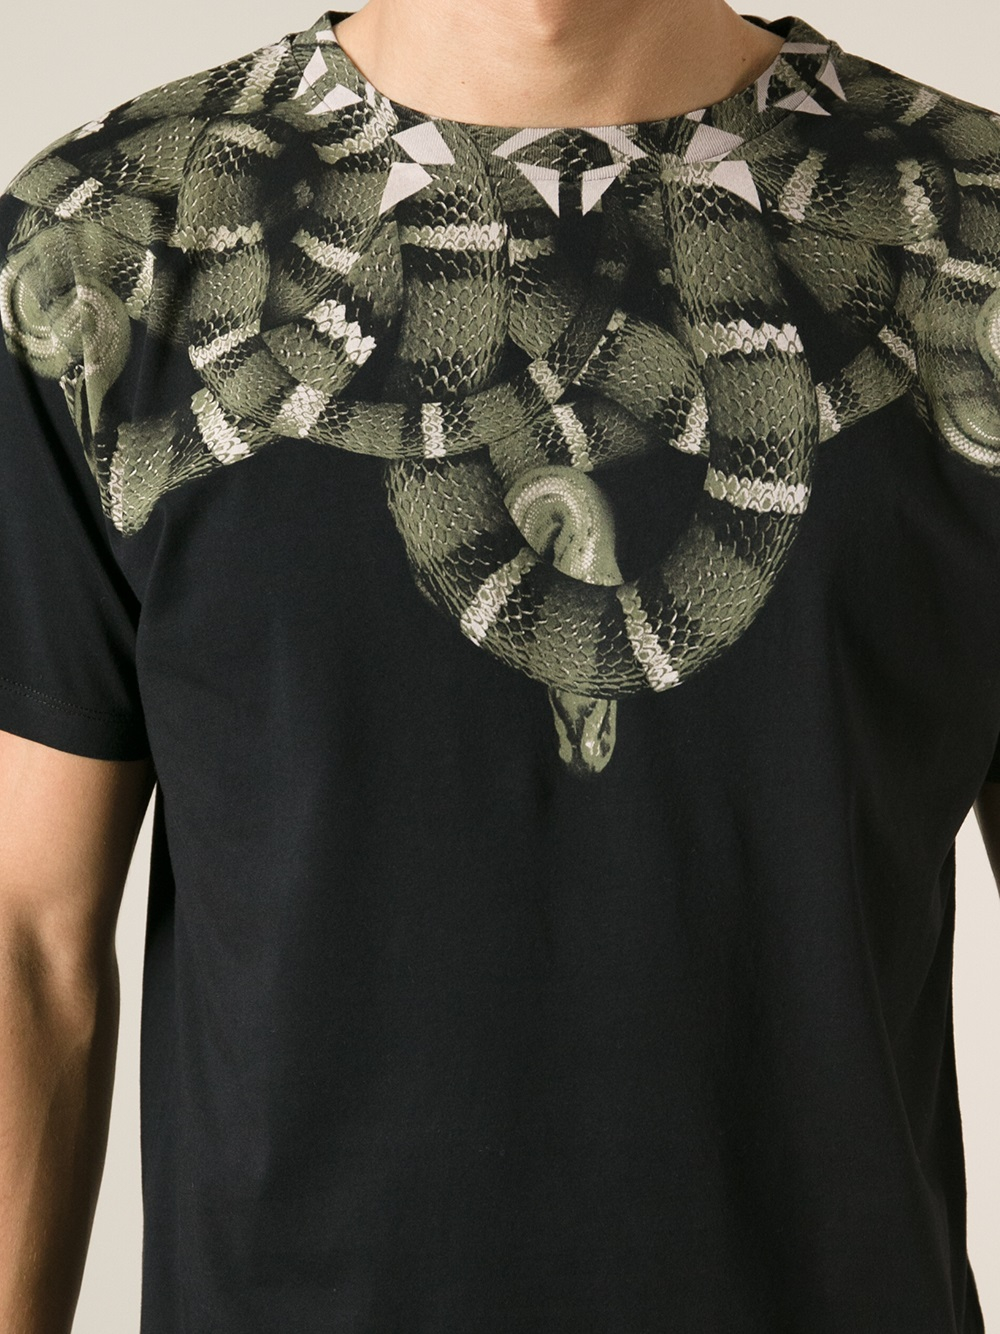 Marcelo Burlon Snake Print Tshirt in Black for Men - Lyst